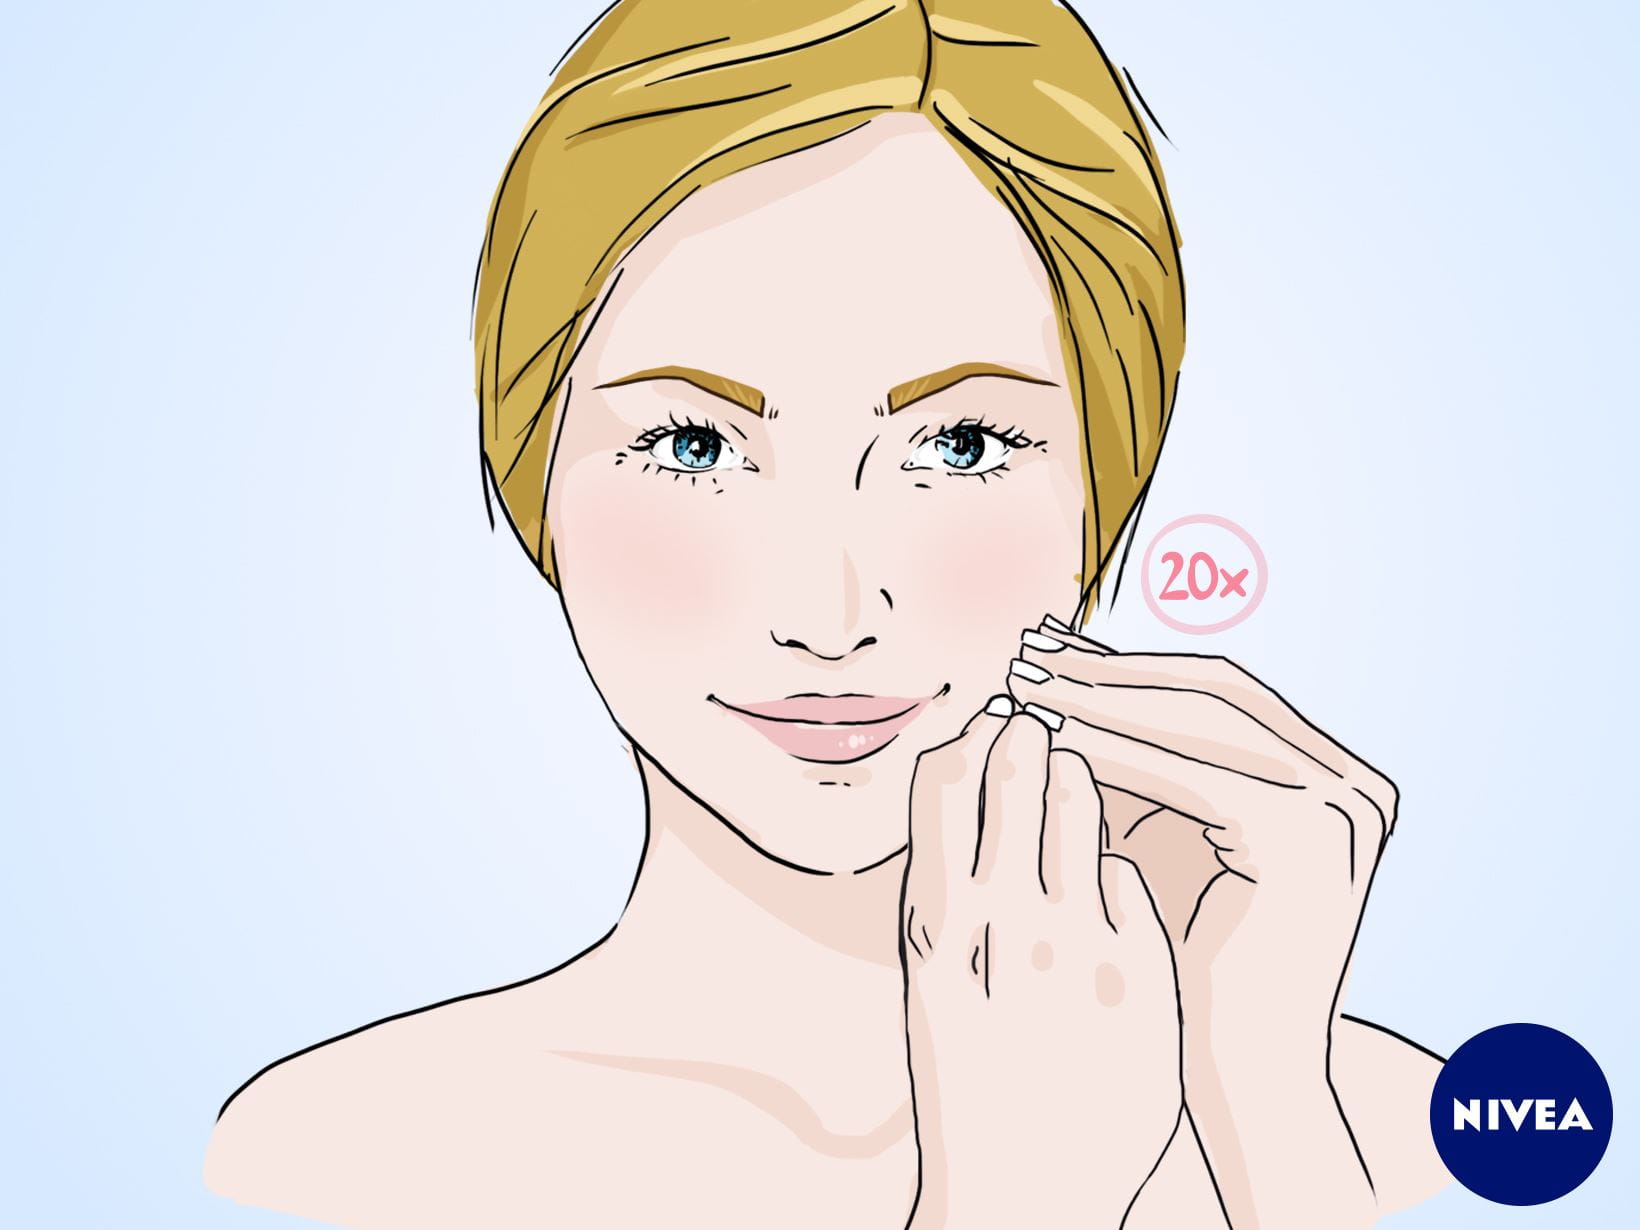 NIVEA Gesichtsmassage-Anleitung: Massagegriff für eine entspannte Mimik